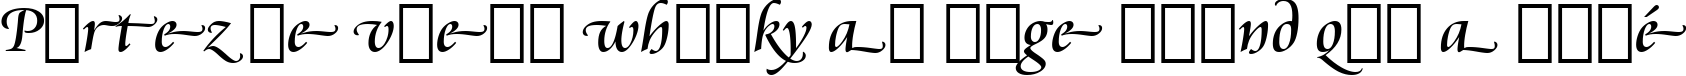 Пример написания шрифтом Cataneo Regular Swash BT текста на французском